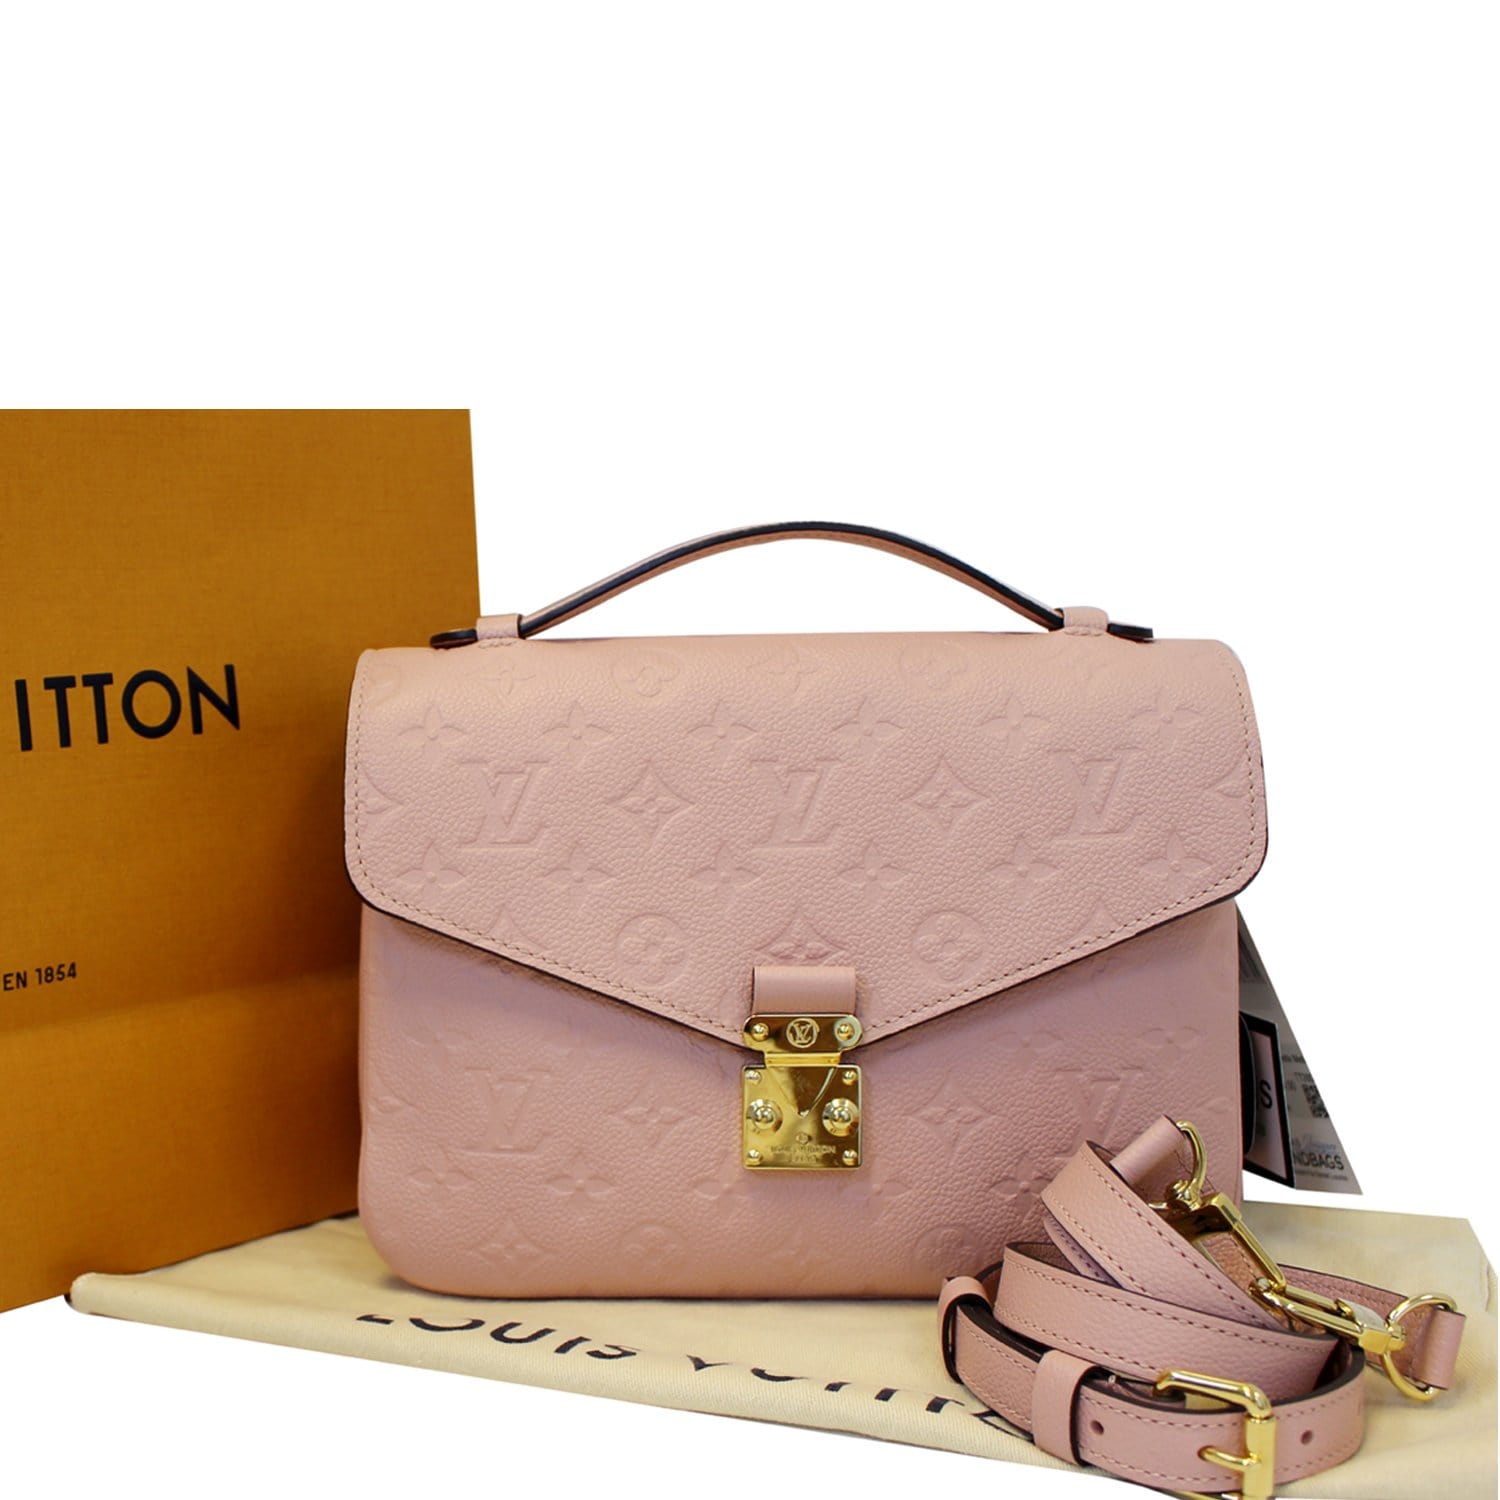 MINT! Louis Vuitton Pochette Metis Rose Poudre Pink Empreinte Leather